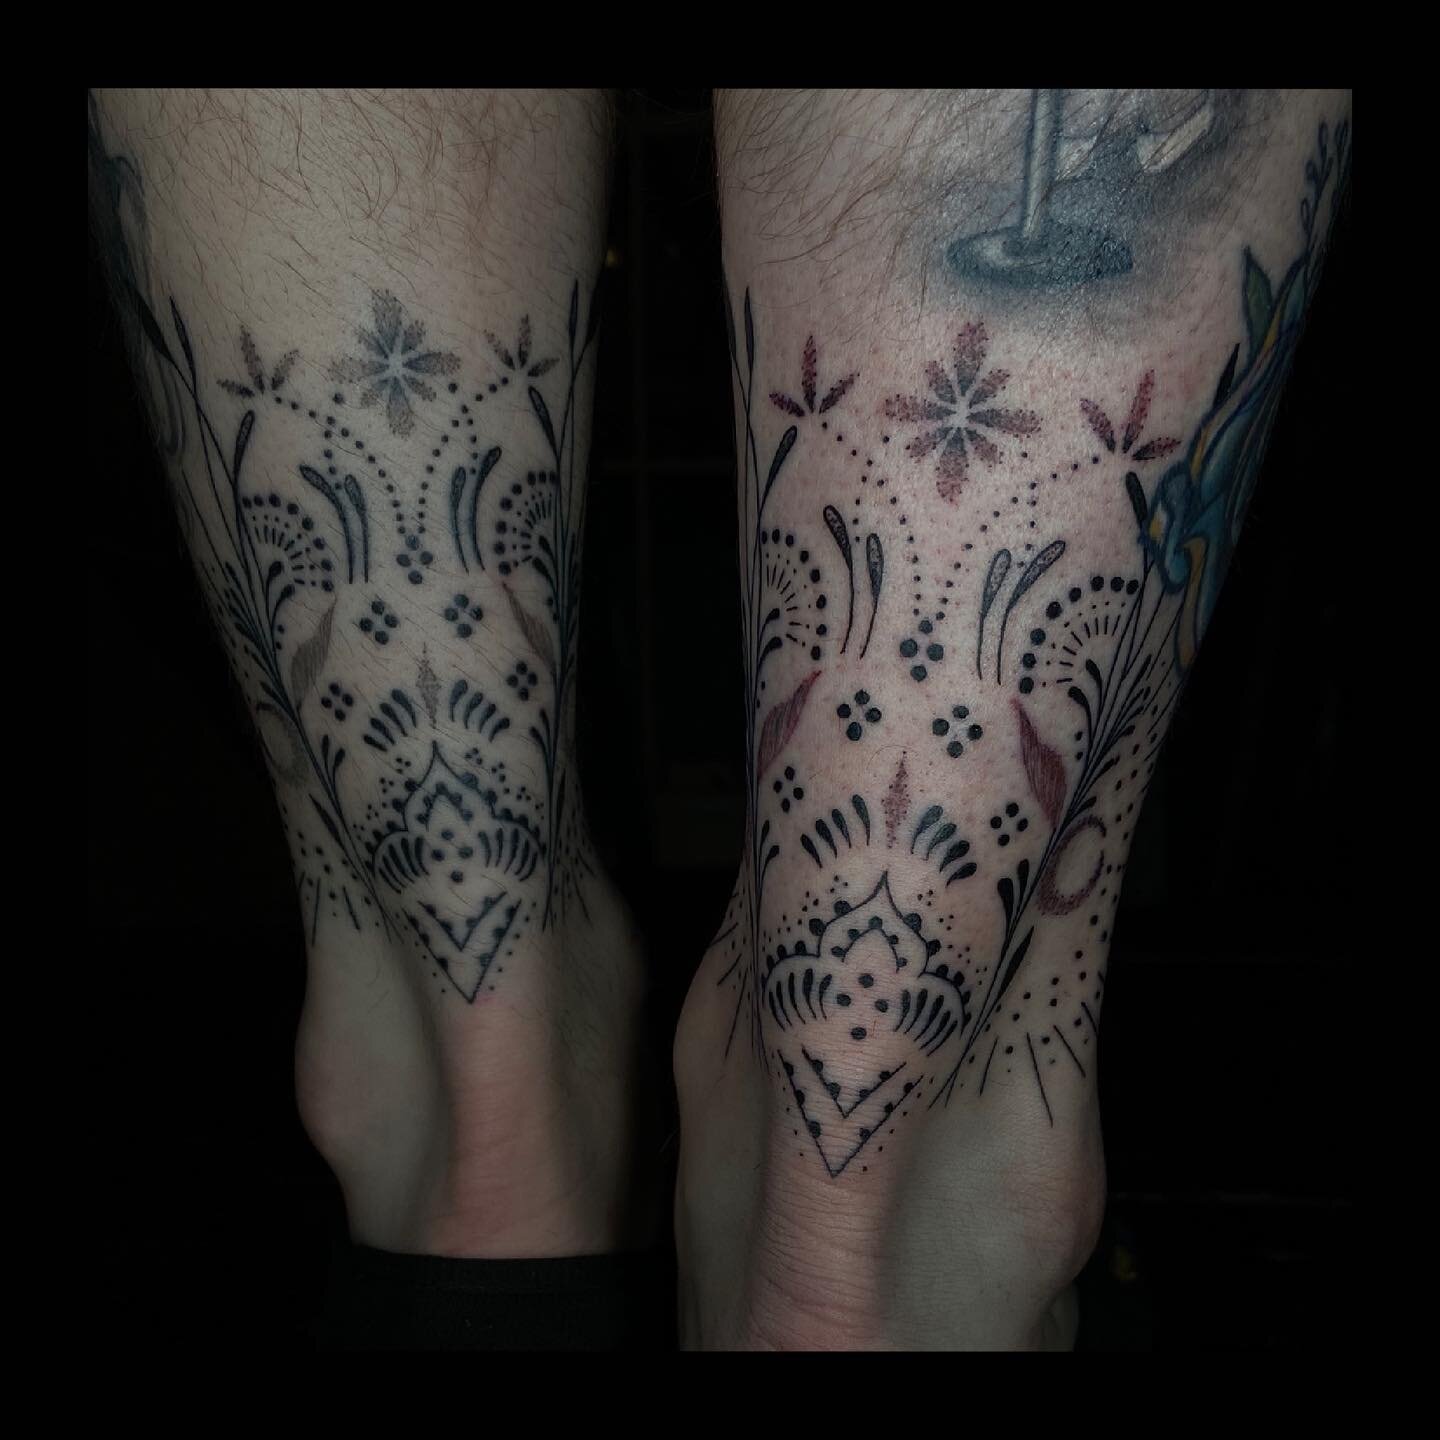 Artist: @dandunks_tattoo 
Shop: @intuitiontattoo 
Subject: Ornamental Ankles
.
.
.

#ornamentaltattoo #geometric #geometrictattoo #dotwork #blackandgreytattoo #suicidegirls  #tattoo #tattoos #girlswithtattoos #guyswithtattoos #inked #cttattooshop #ta